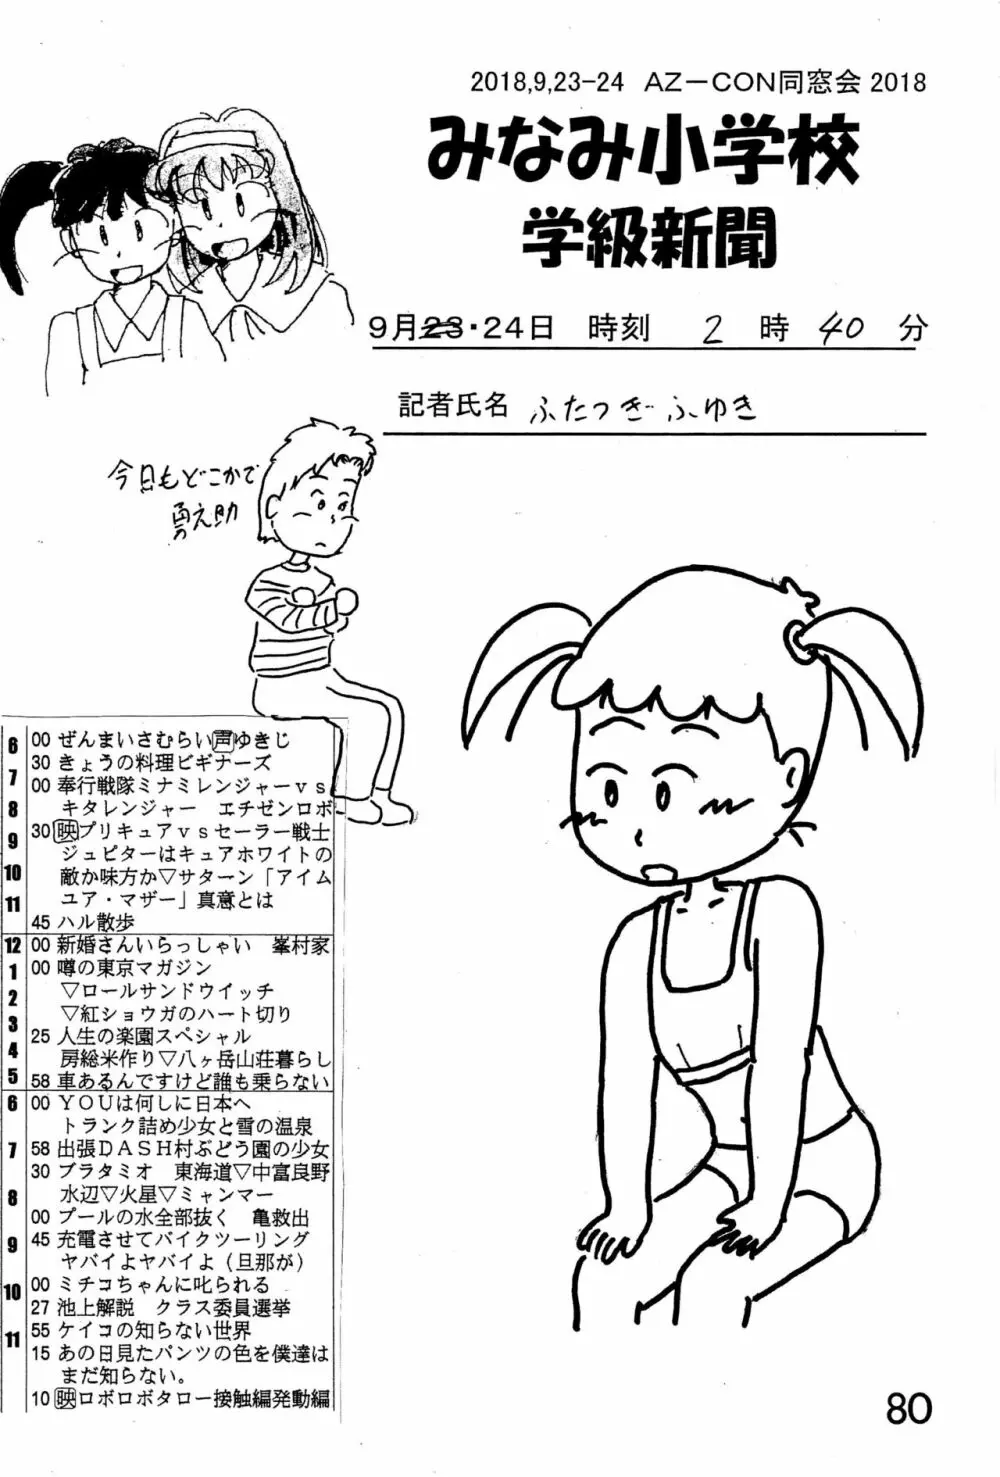 みなみ小学校学級新聞2018+号外版 80ページ